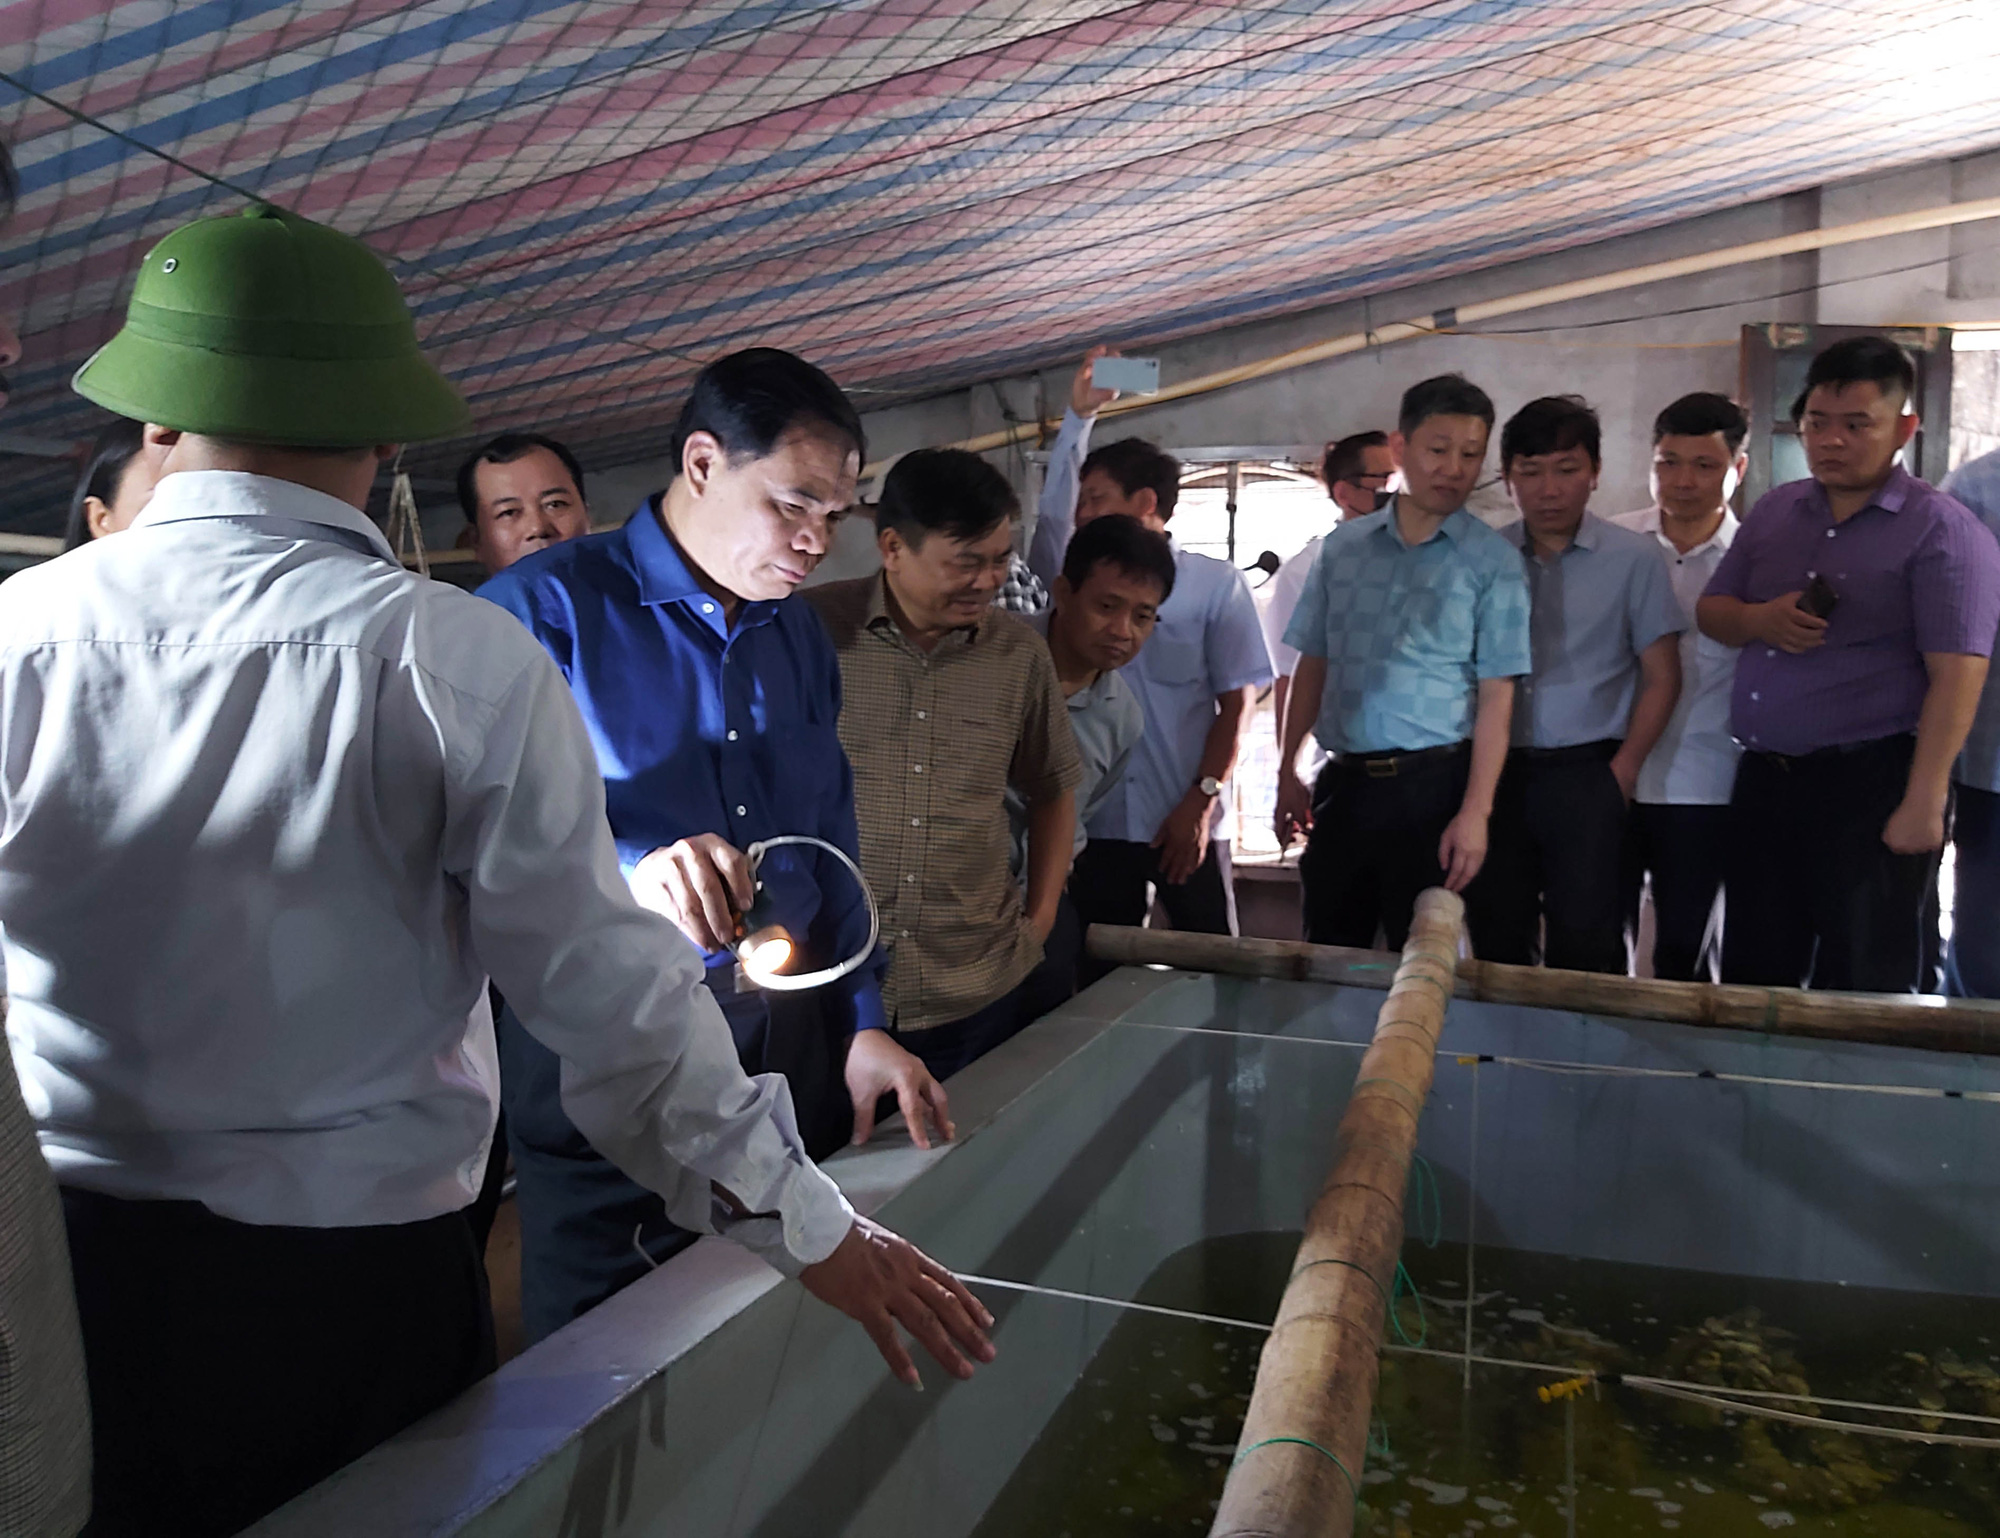 Một trang trại thu nhập 7 tỷ đồng từ nuôi hàu, tôm ở Ninh Bình được Bộ Trưởng NNPTNT tới thăm có gì đặc biệt? - Ảnh 3.